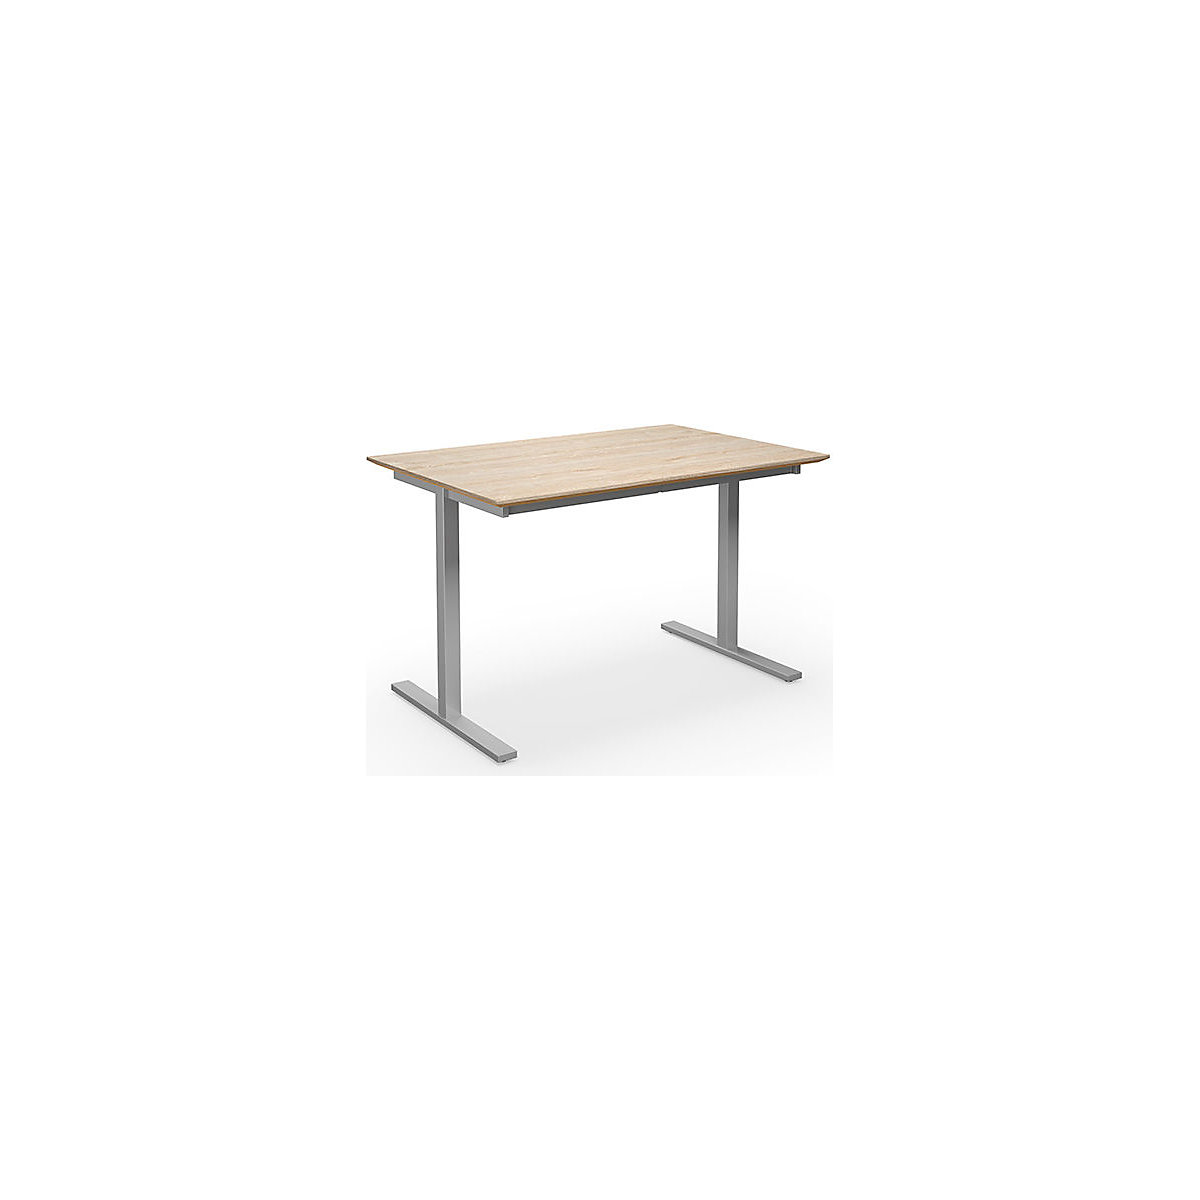 Multifunctionele tafel DUO-T Trend, recht blad